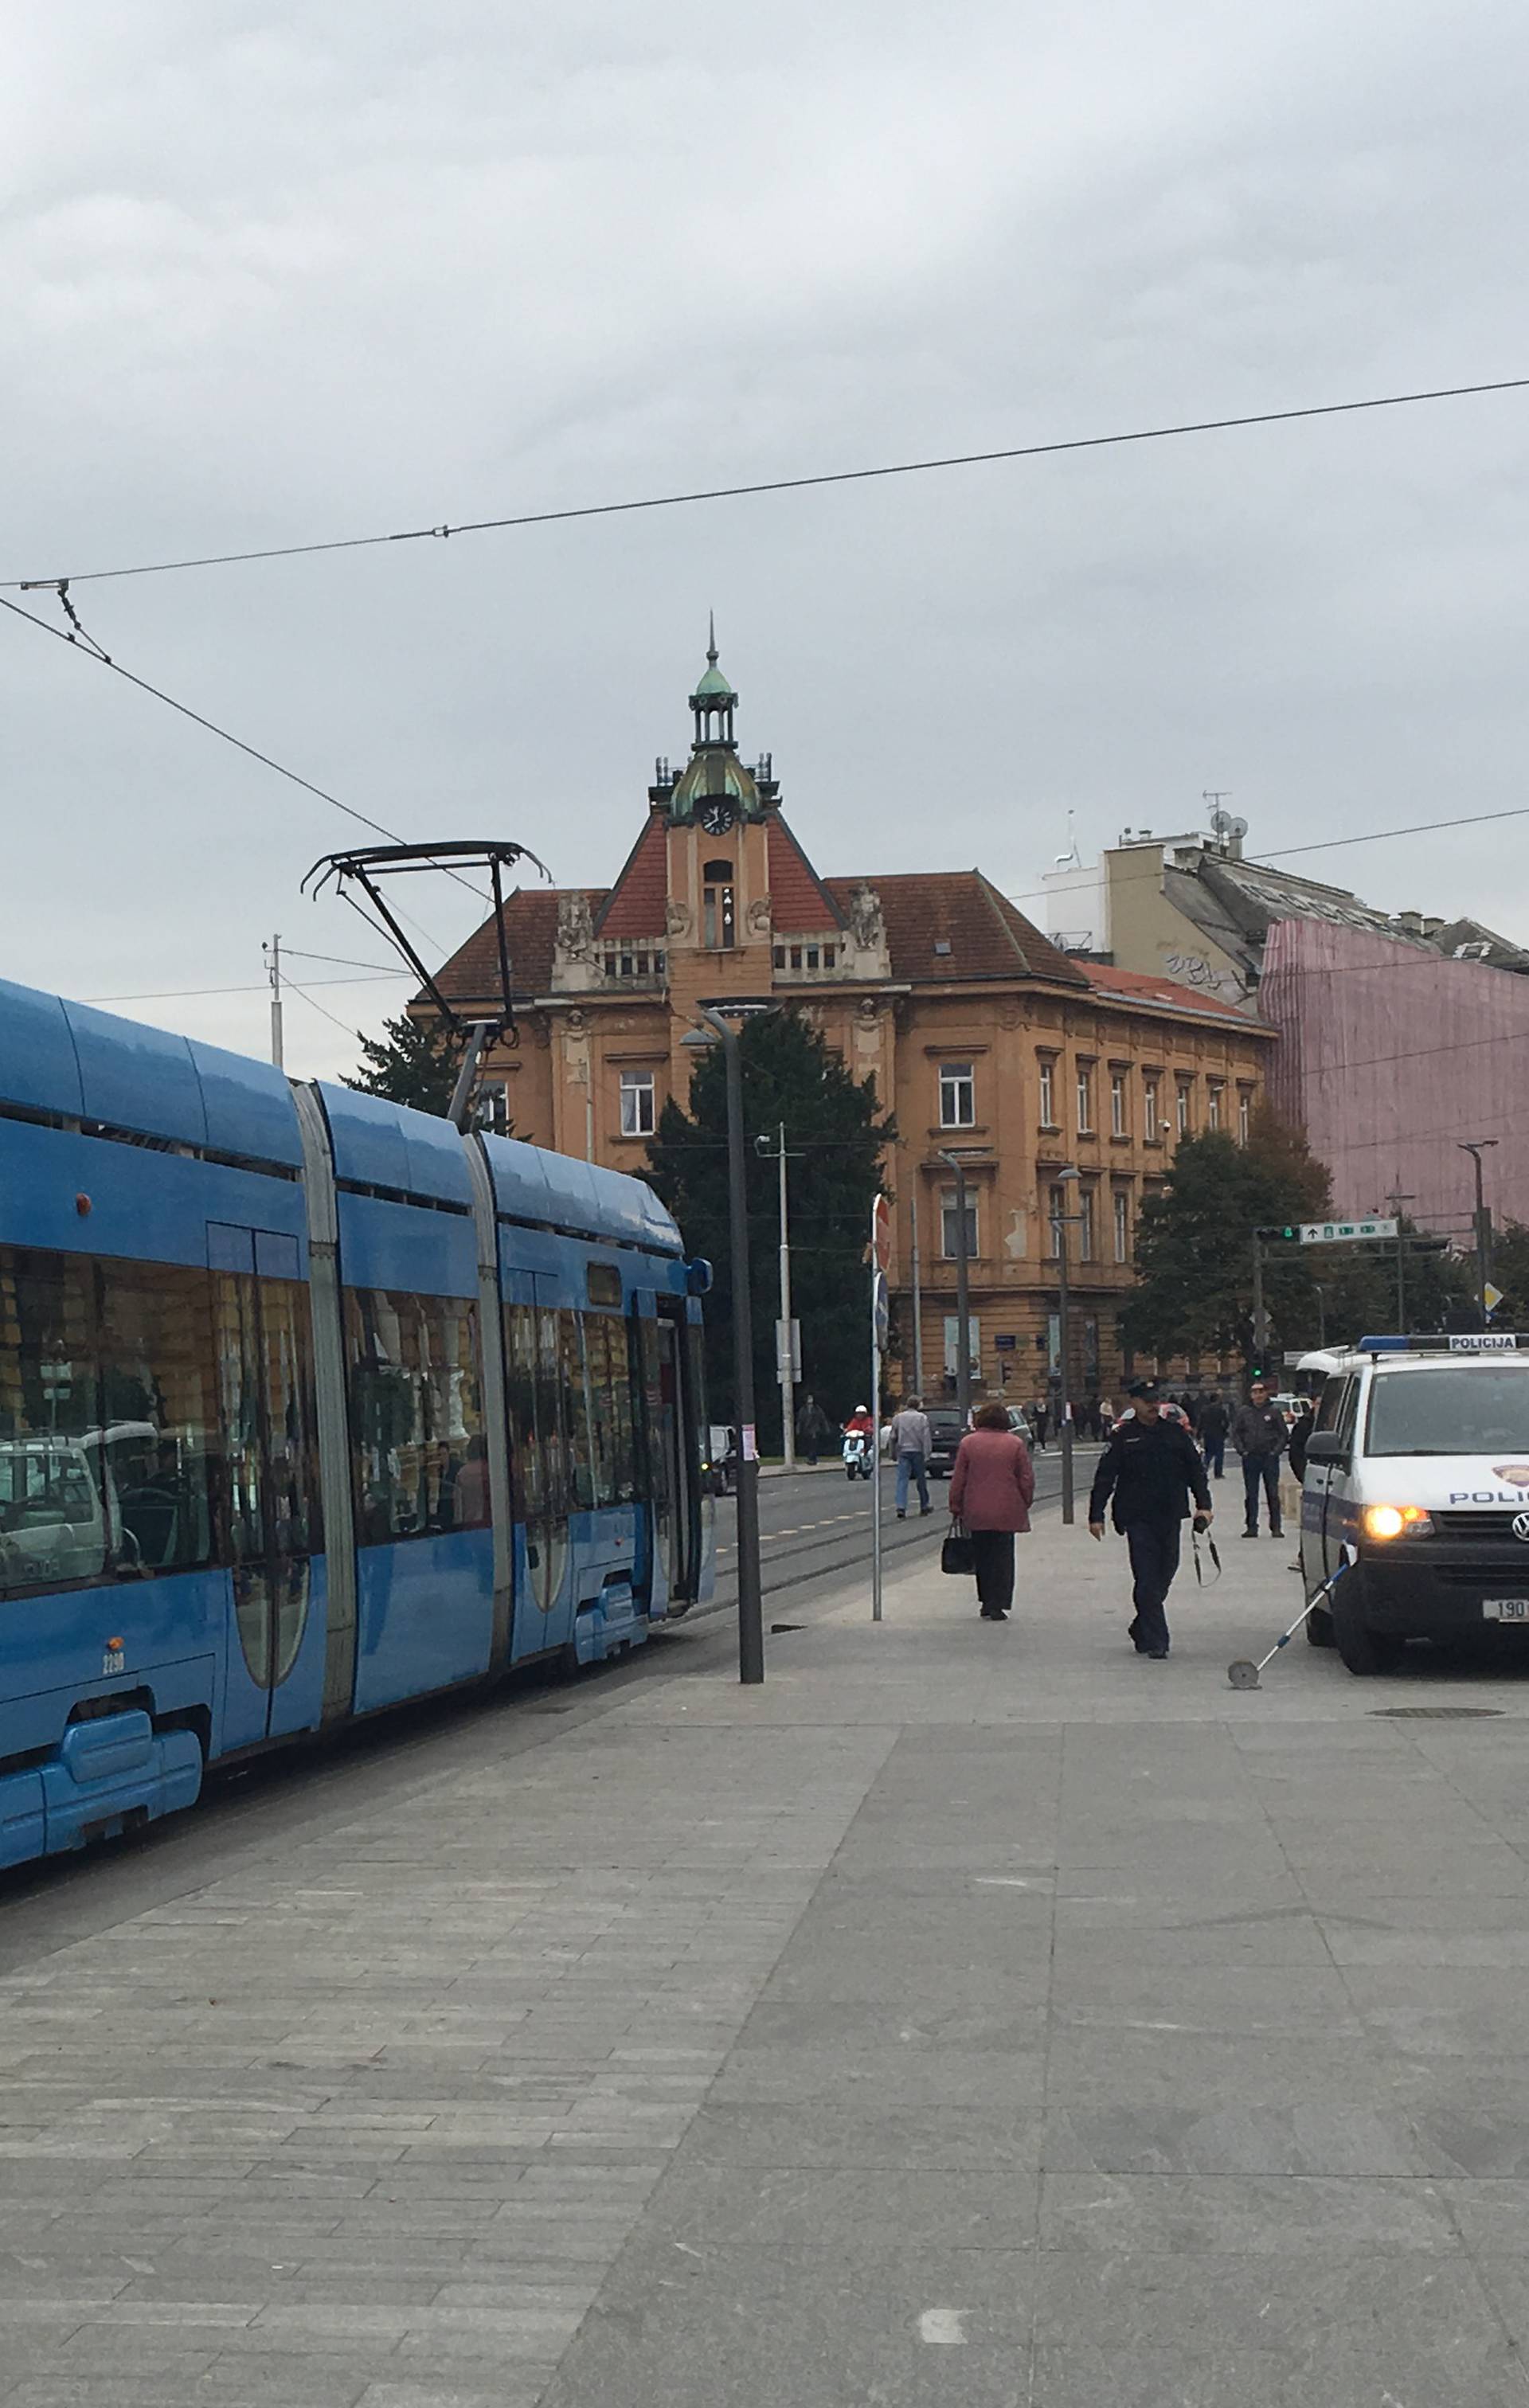 Nesreća u Zagrebu: Djevojka se spotaknula i pala pod tramvaj